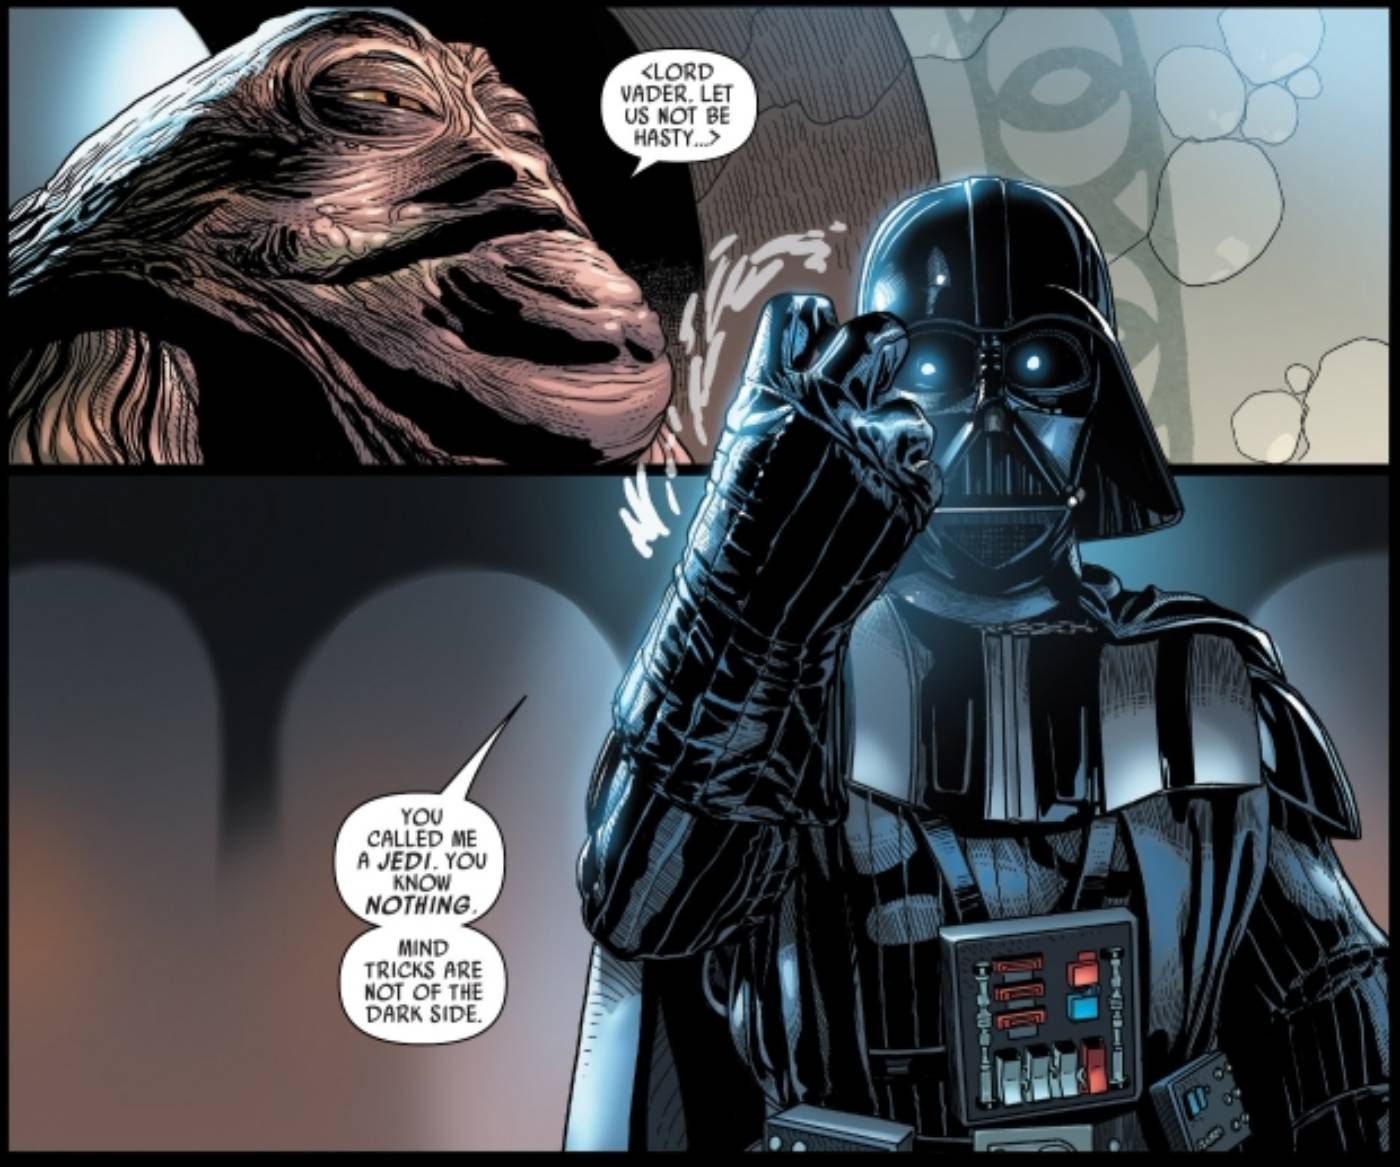 Leia Shares a Dark Bond With Darth Vader Movie Fans Never Saw